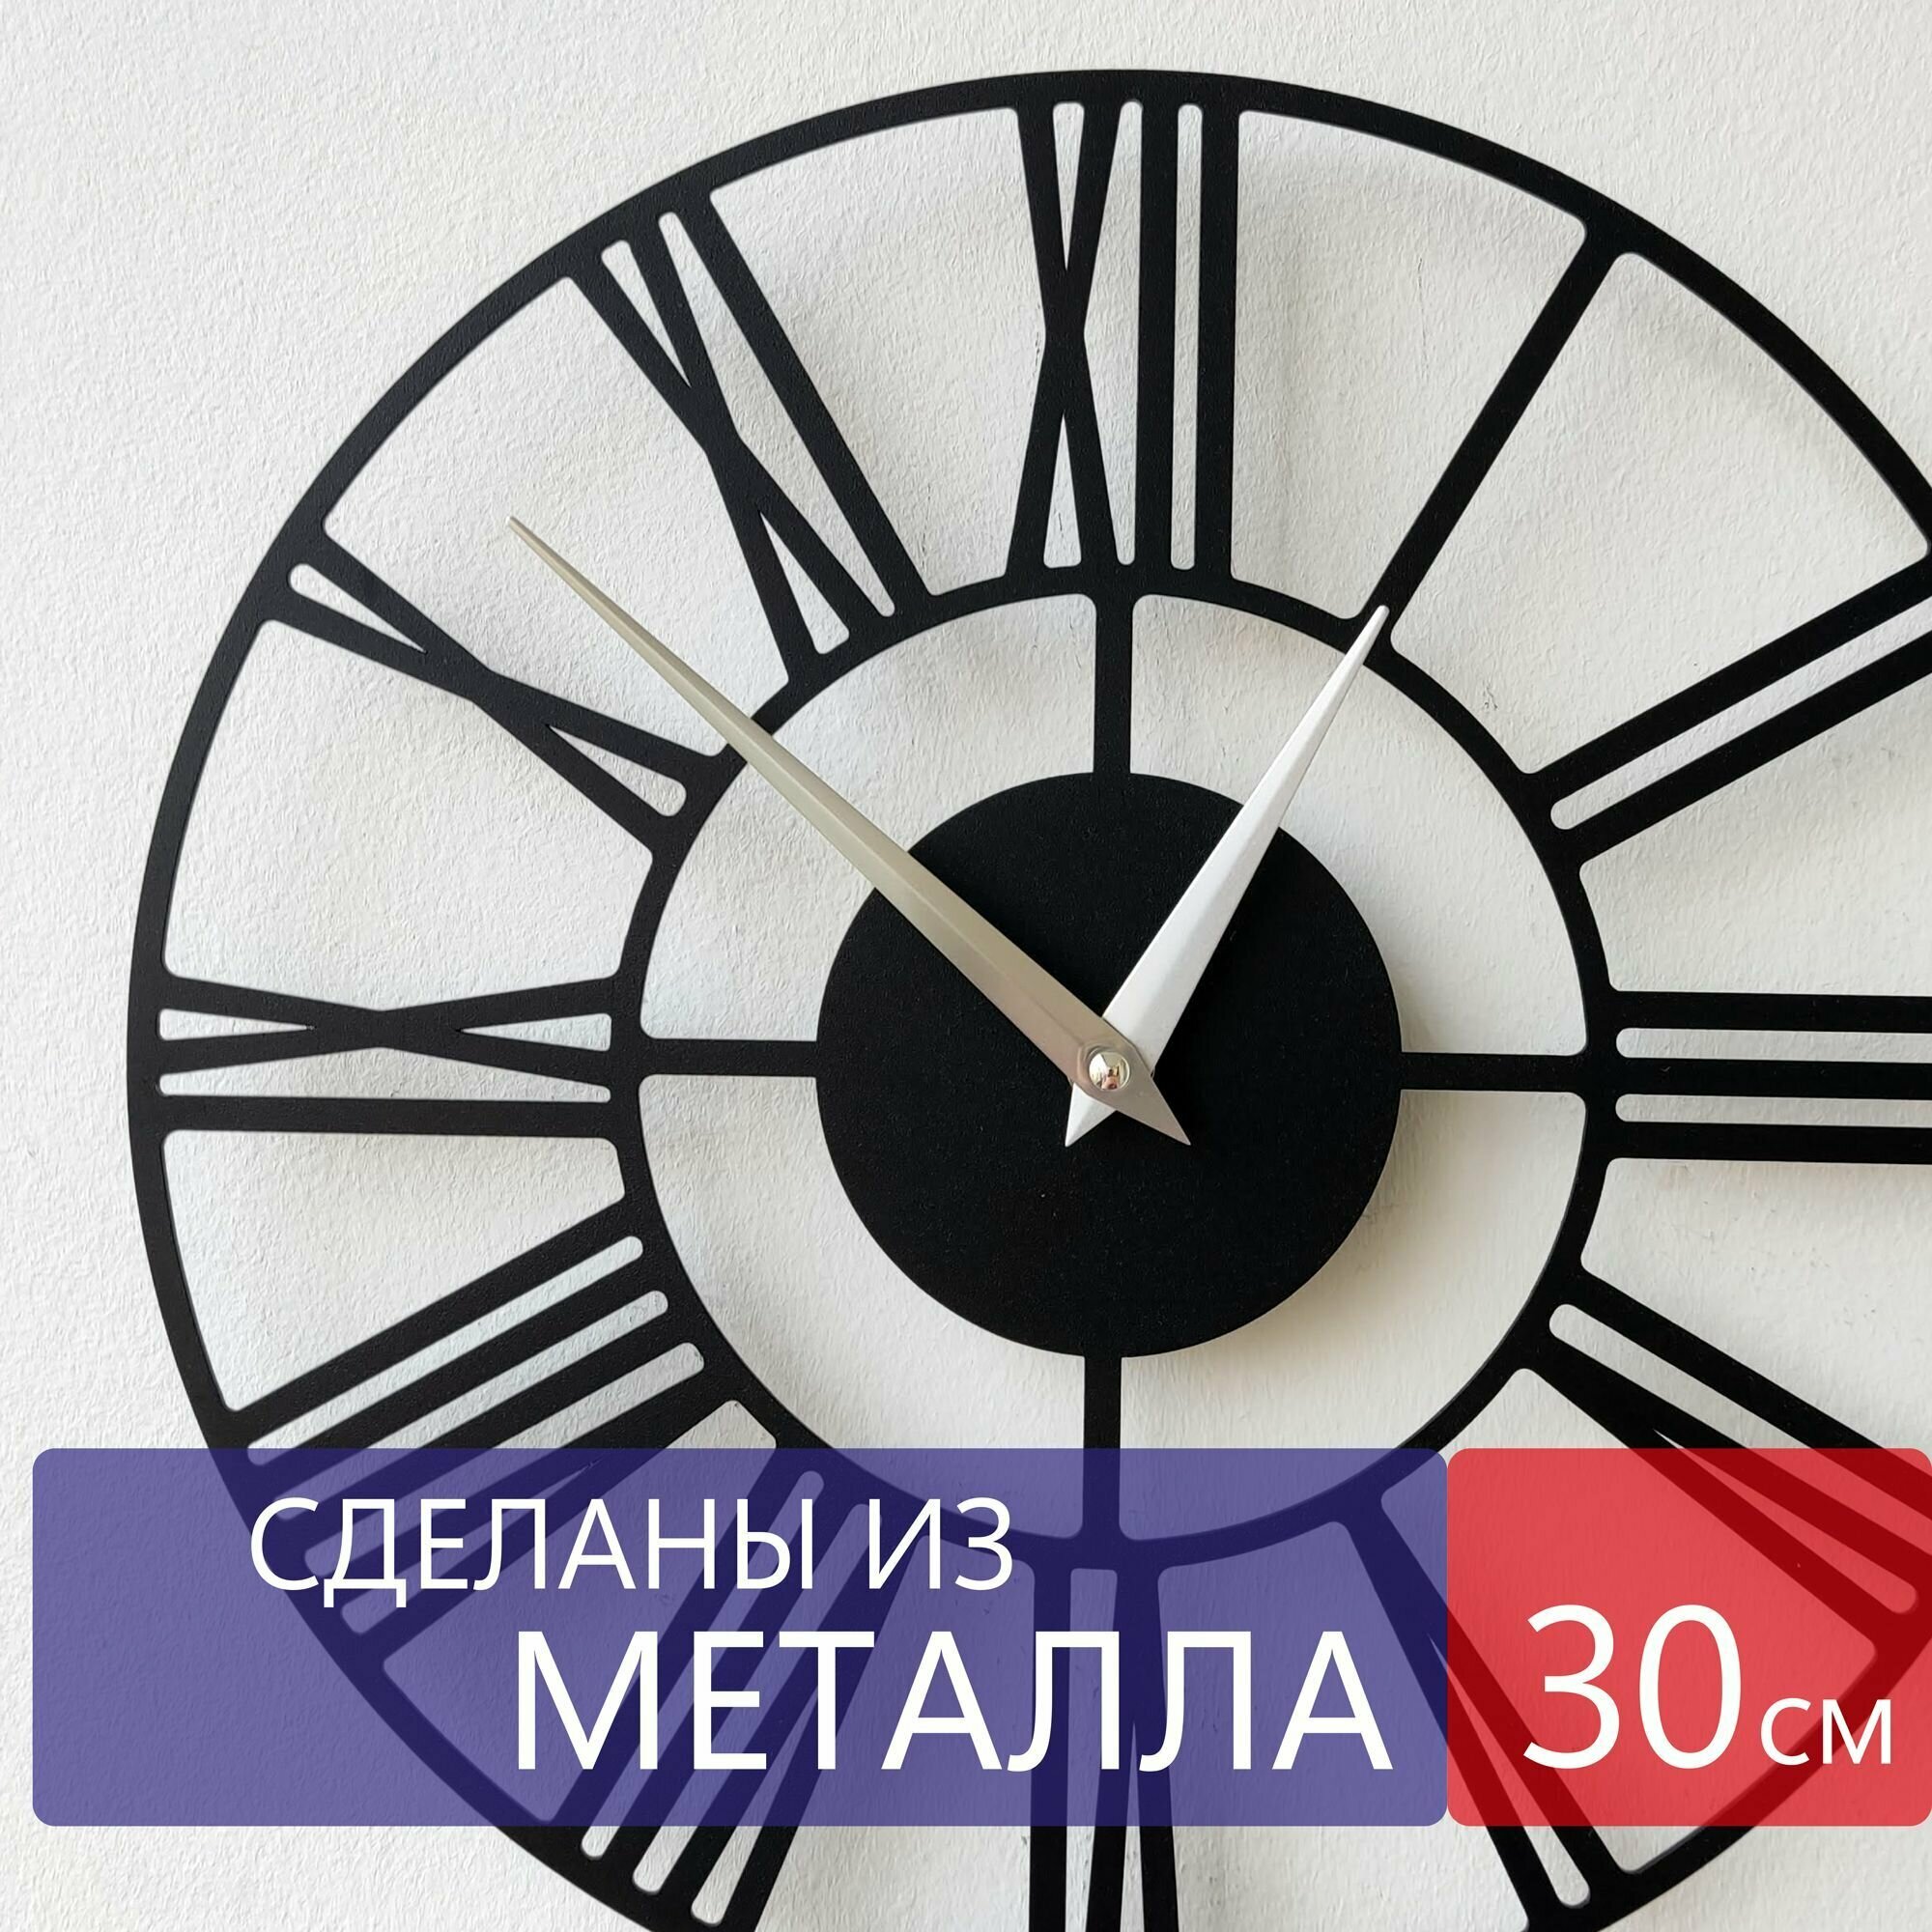 Настенные часы из металла "Altair", бесшумные, большие интерьерные часы, 30см х 30см, чёрные